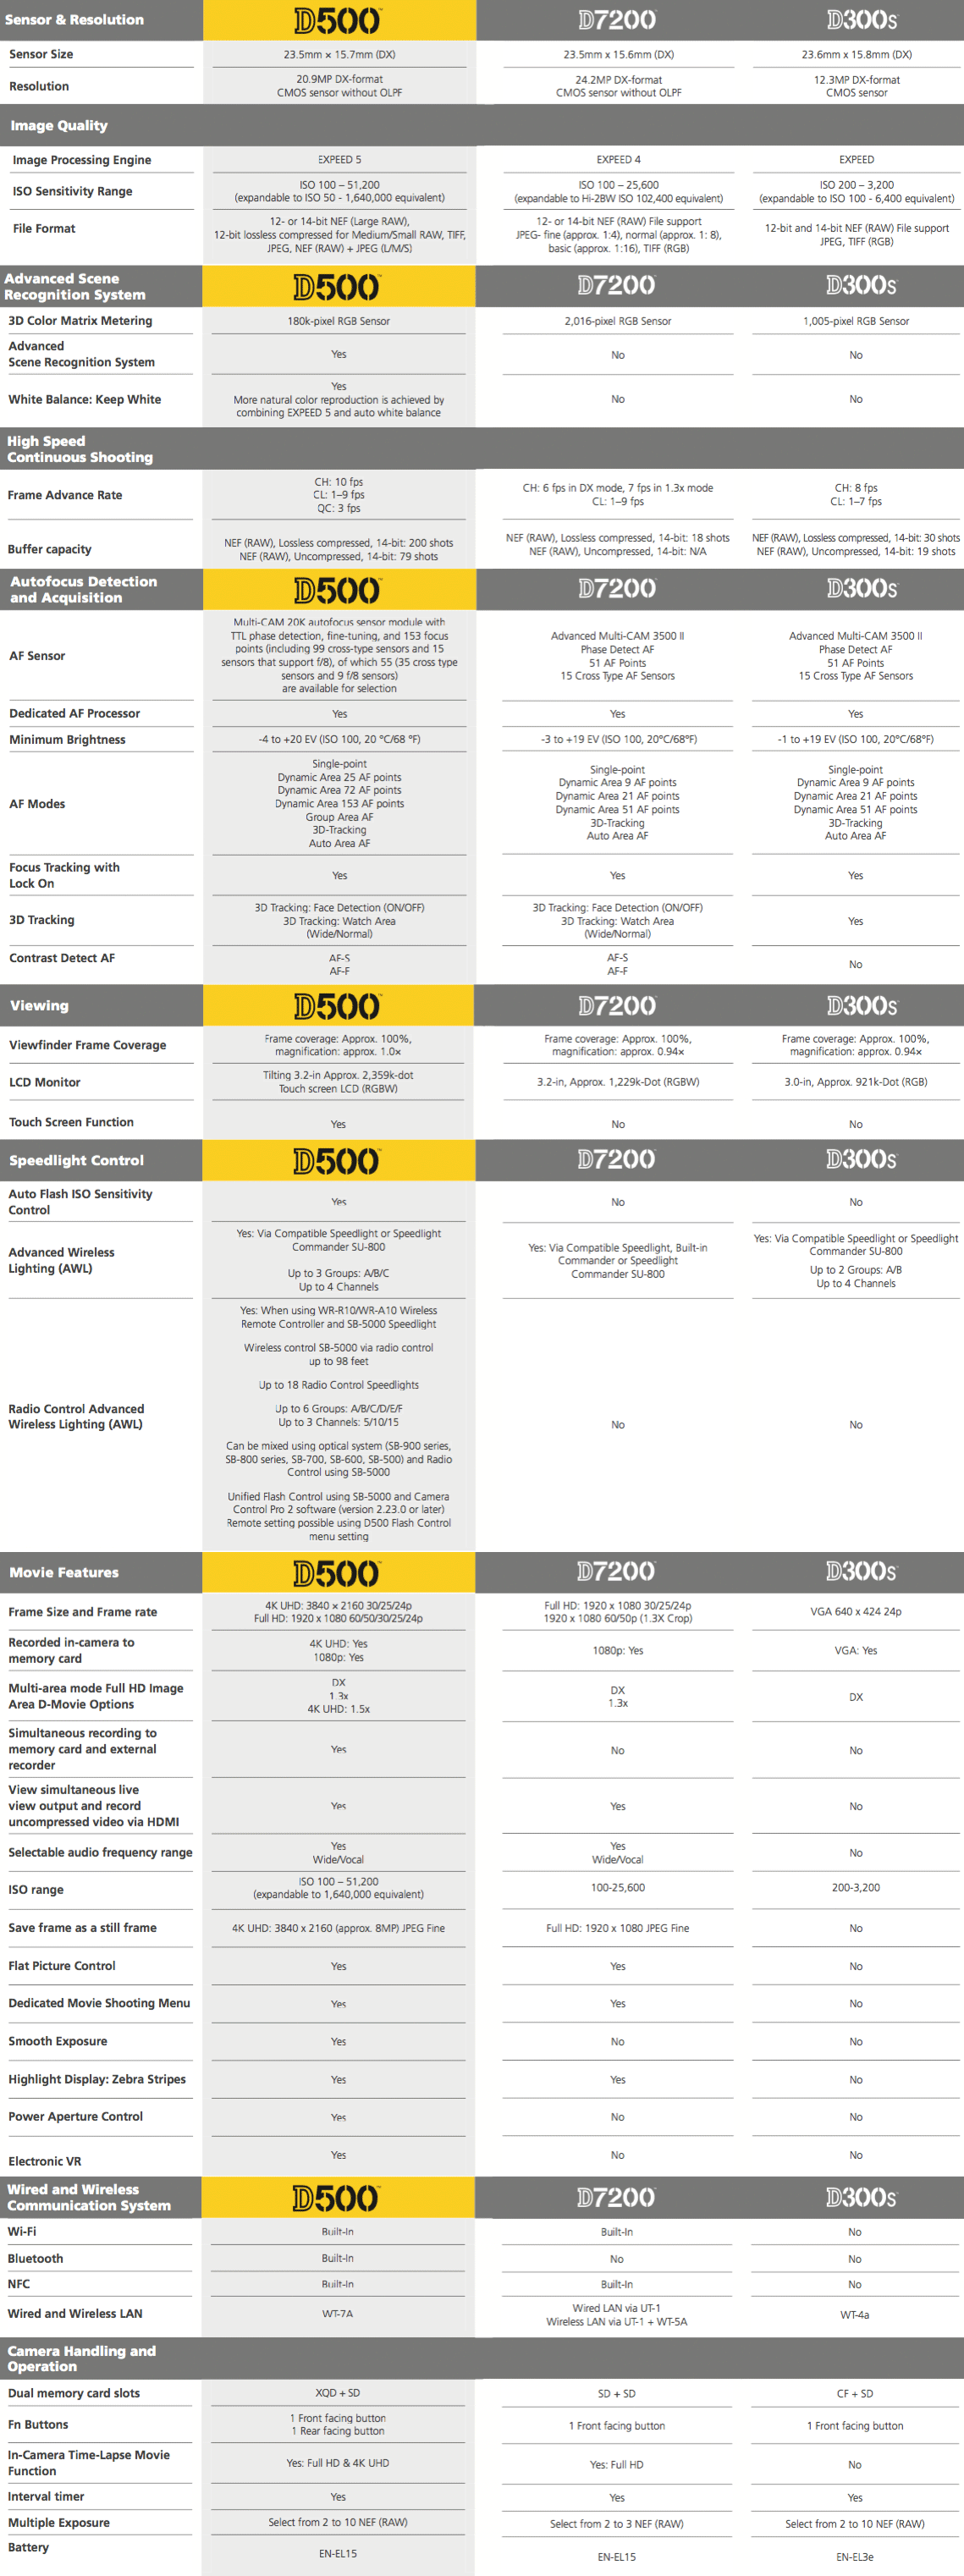 Nikon-D500-vs.-D7200-vs.-D300s-specifications-comparison